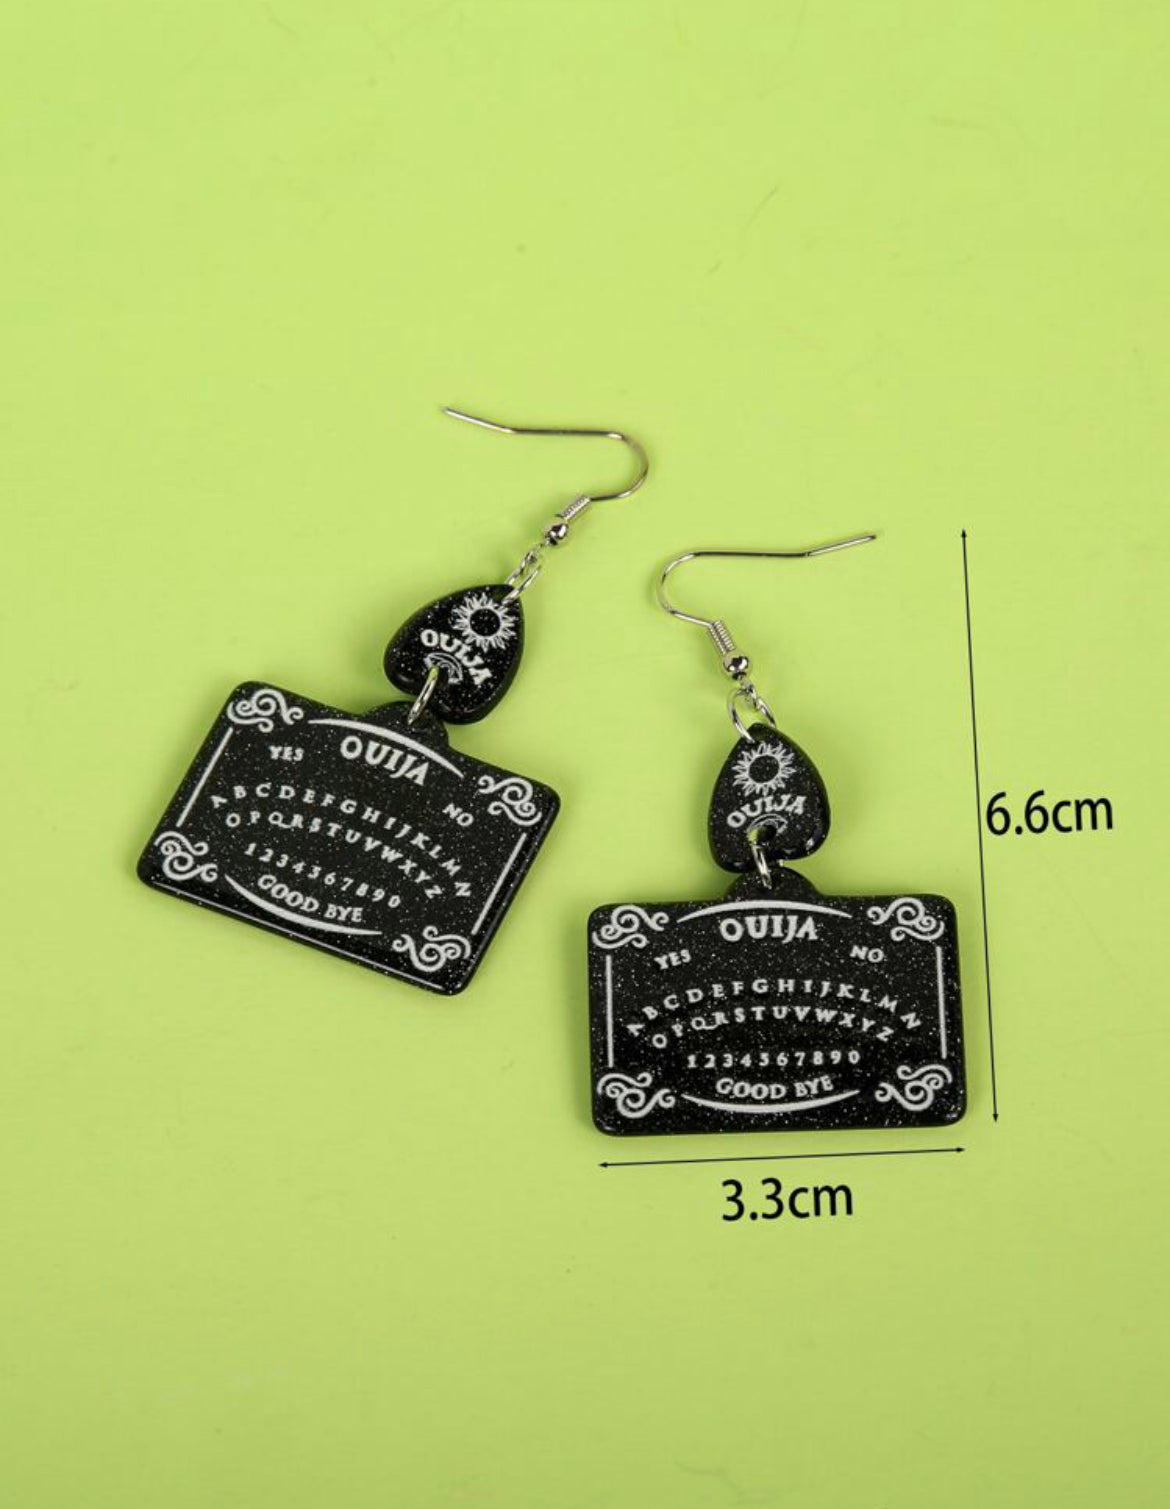 Ouija Board Design earrings